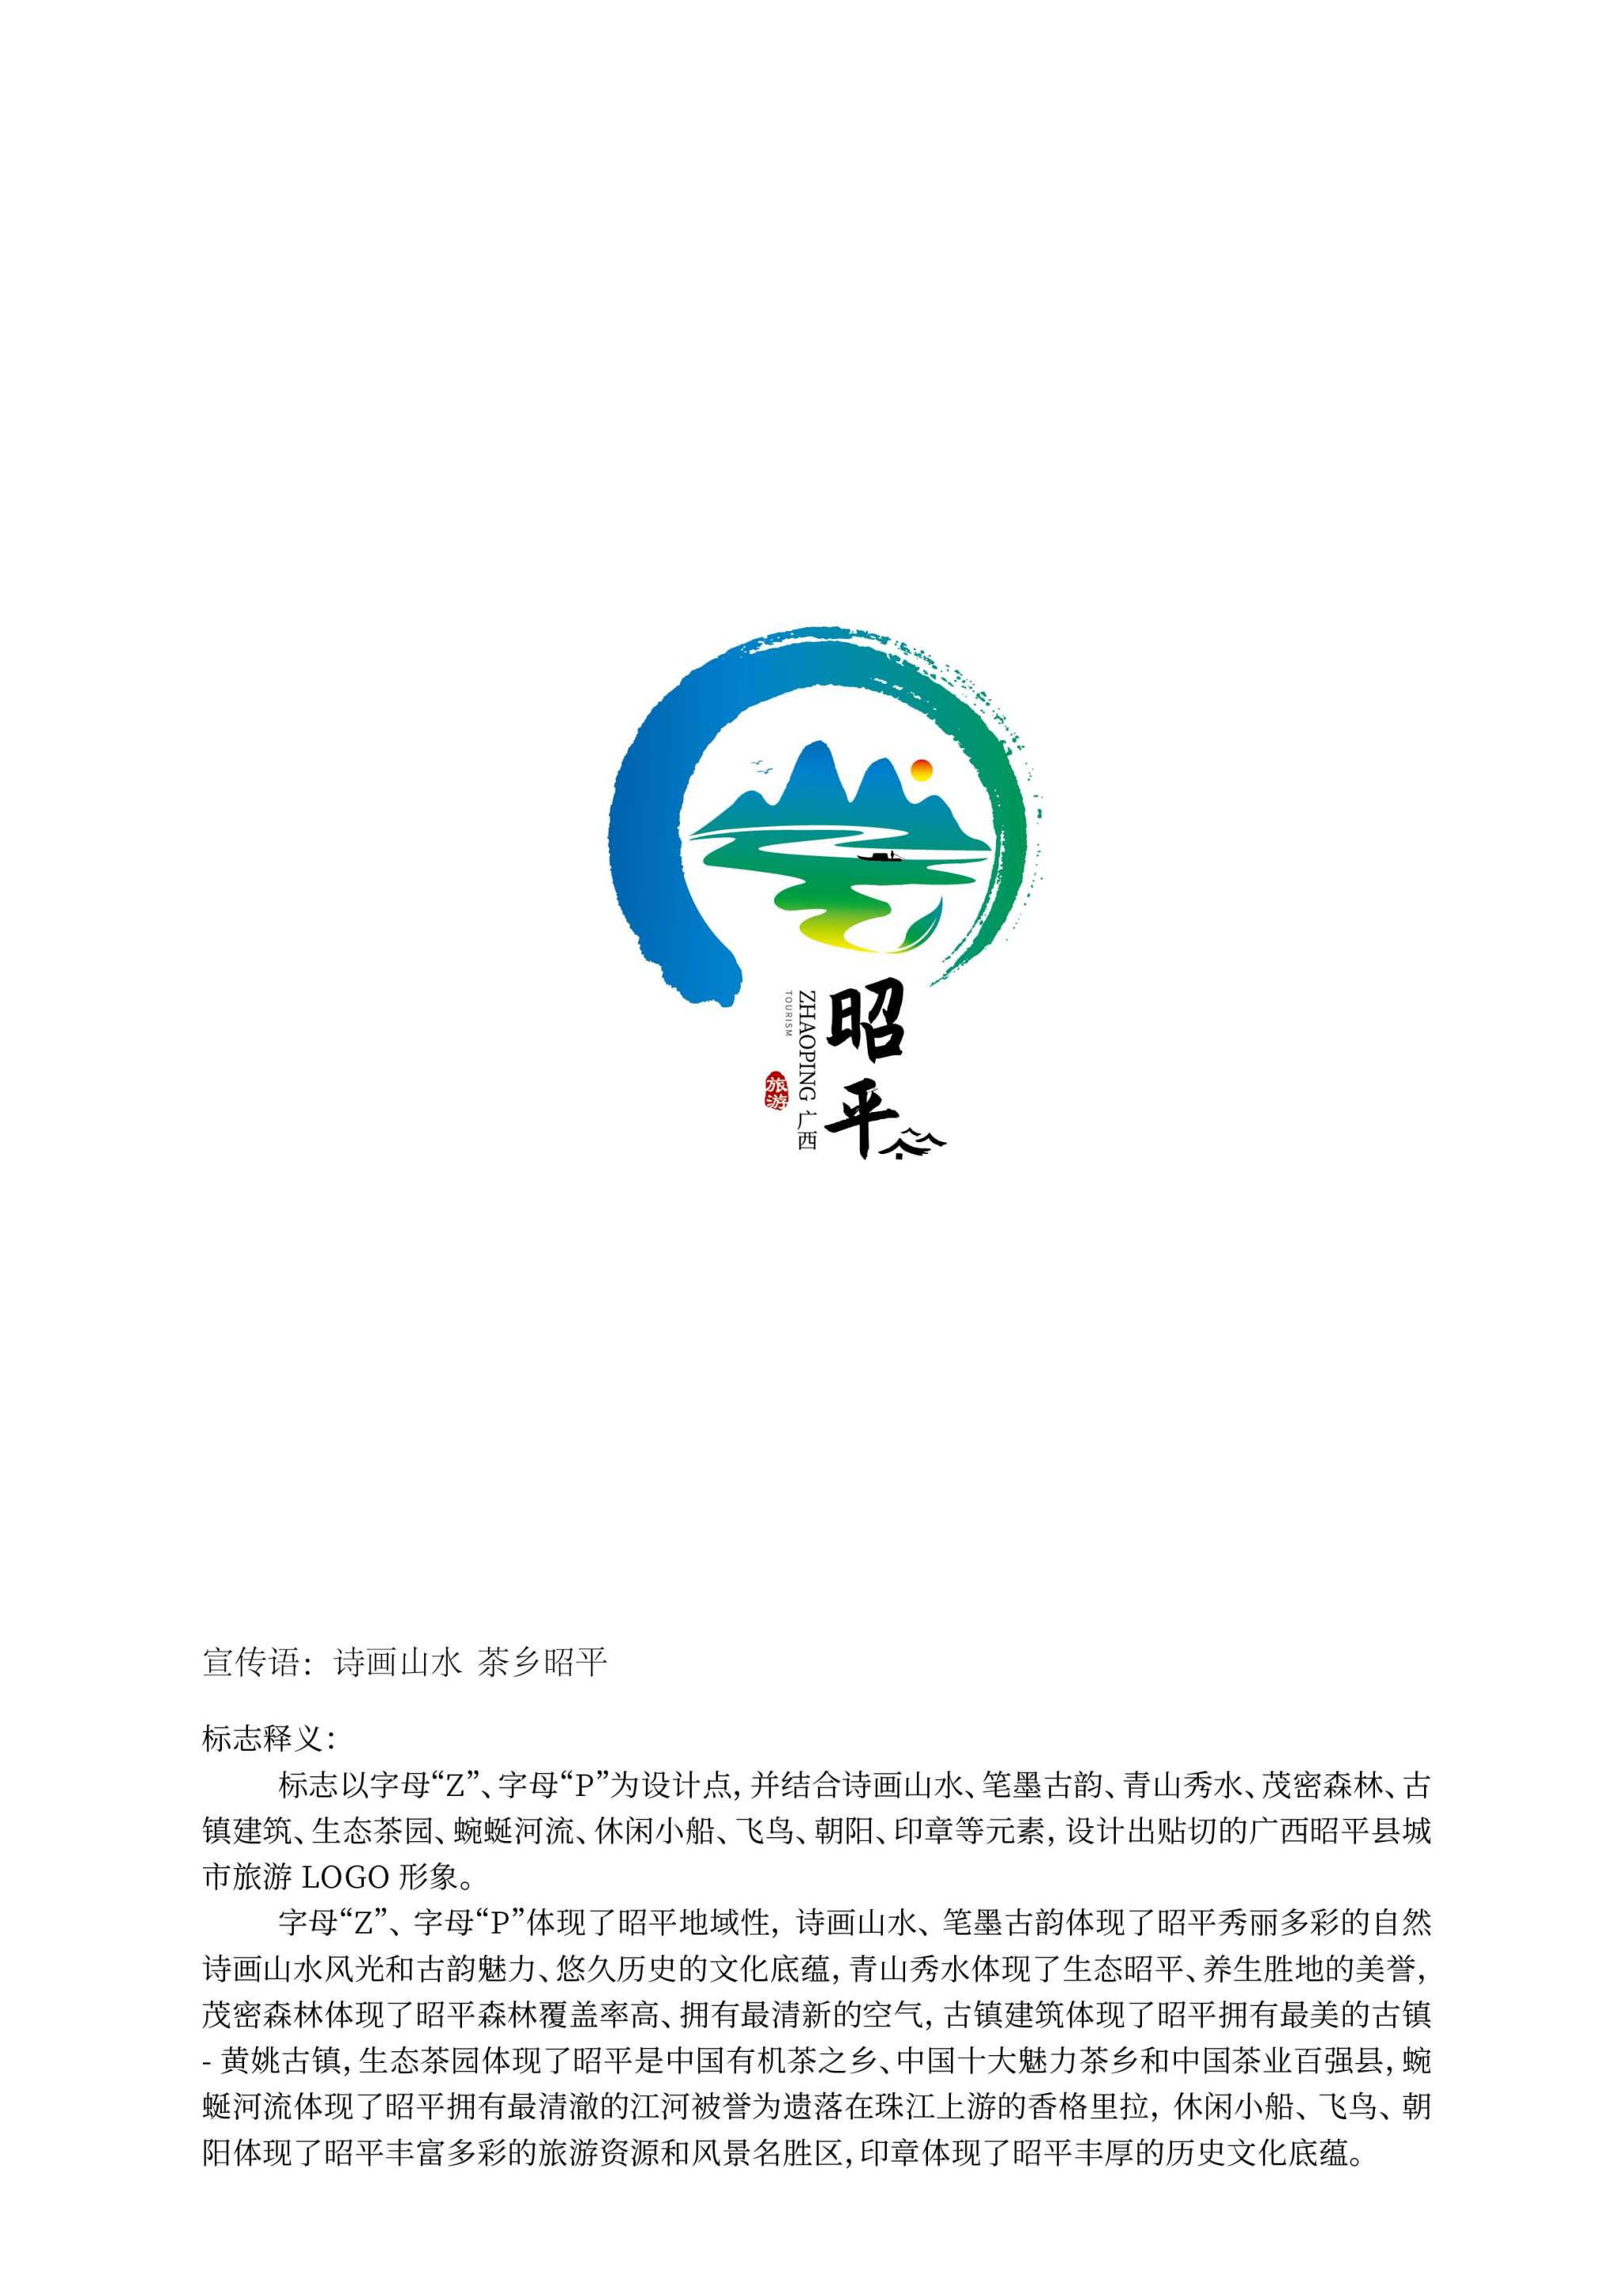 广西昭平县城市旅游形象logo1-张凯